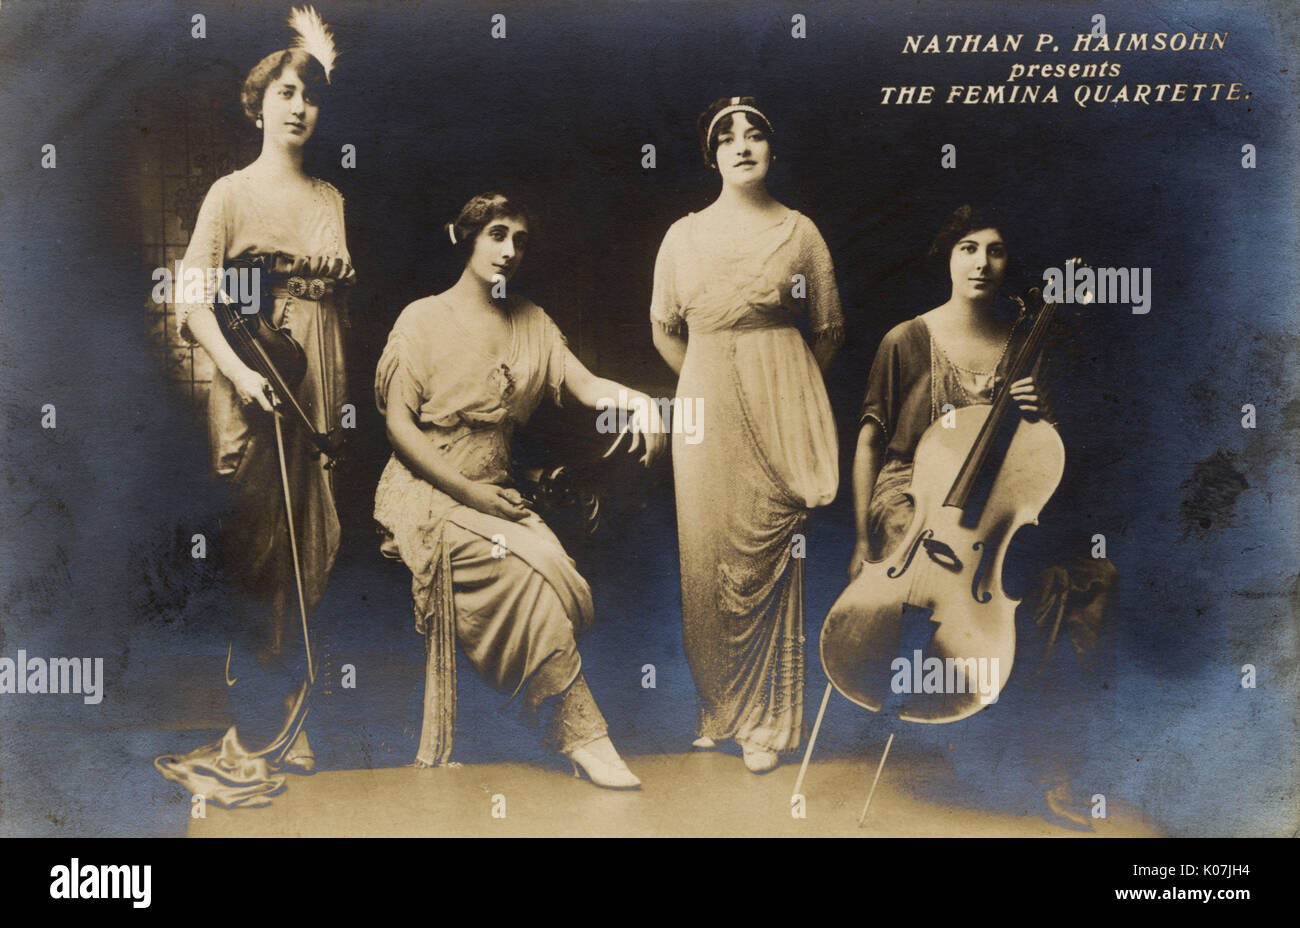 WW1 era - Femina Quartette cadena presentado por Nathan P. Haimsohn. Fecha: circa 1916 Foto de stock